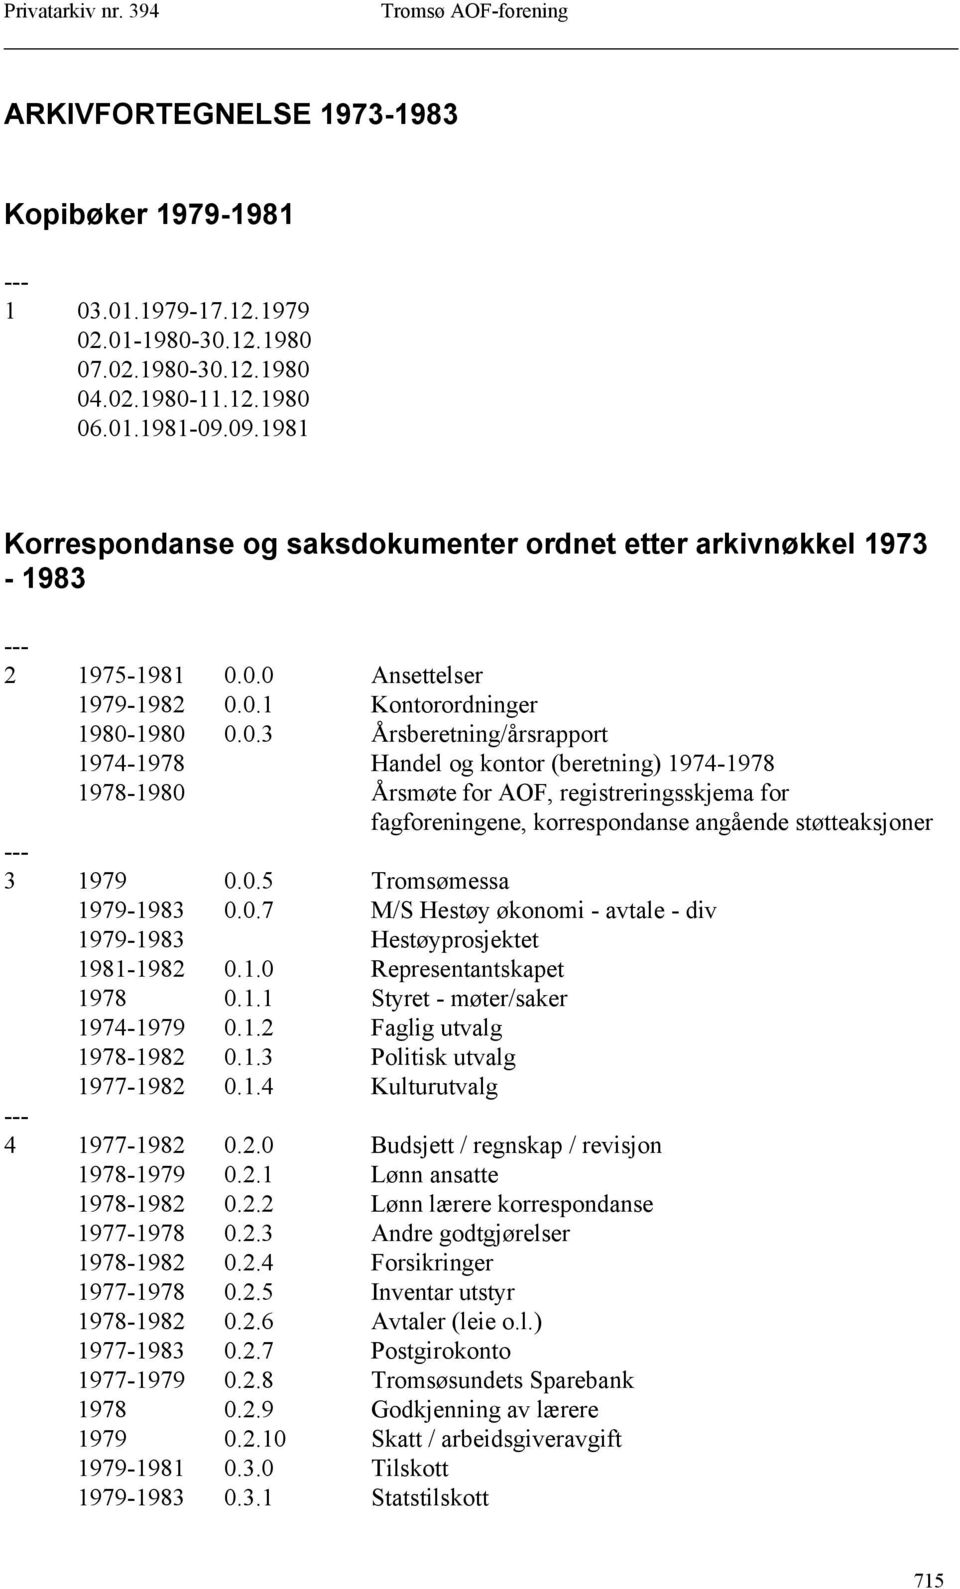 0.5 Tromsømessa 1979-1983 0.0.7 M/S Hestøy økonomi - avtale - div 1979-1983 Hestøyprosjektet 1981-1982 0.1.0 Representantskapet 1978 0.1.1 Styret - møter/saker 1974-1979 0.1.2 Faglig utvalg 1978-1982 0.